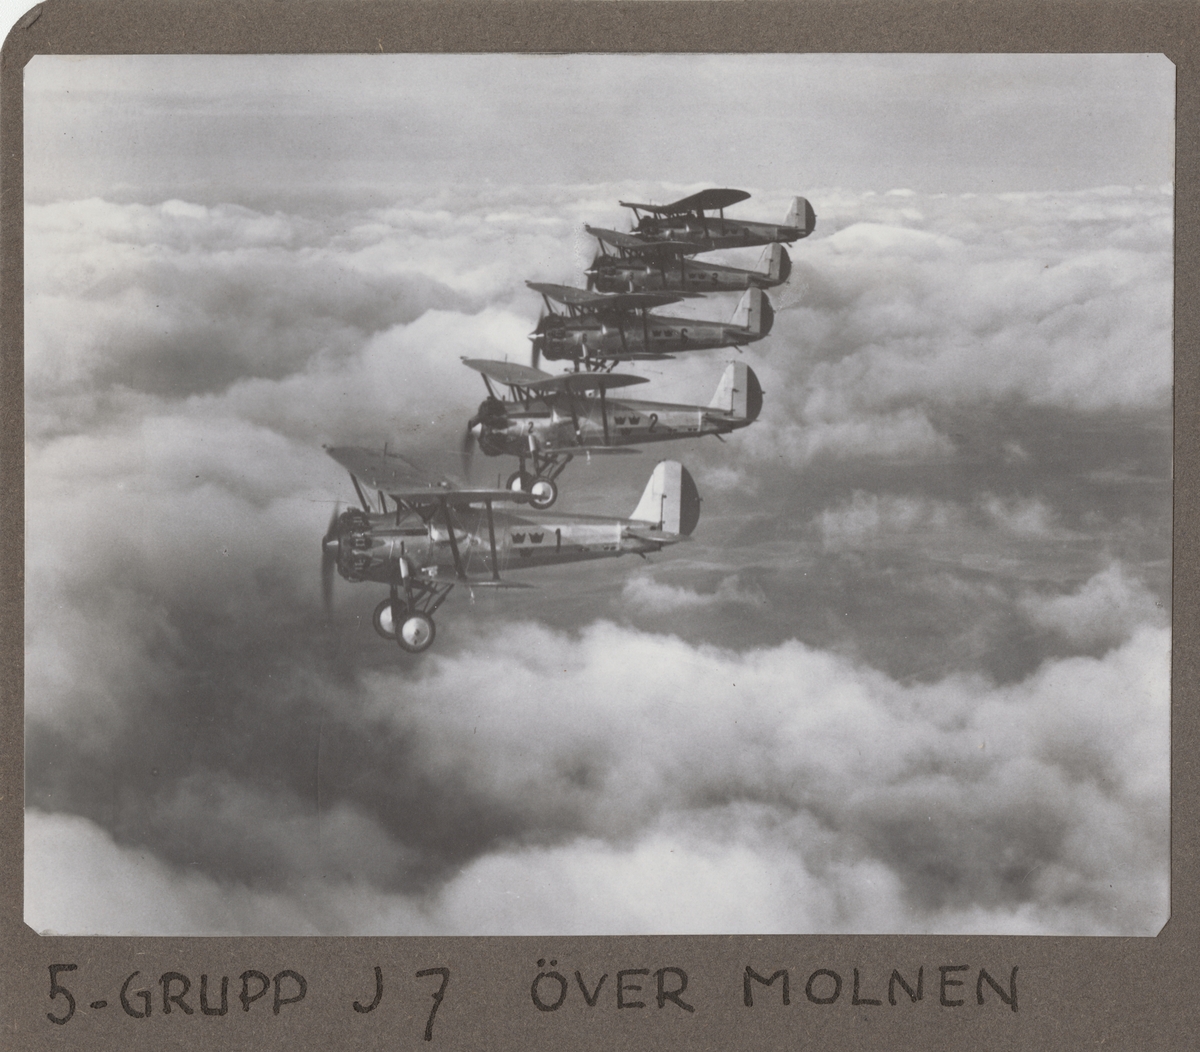 Fem flygplan J 7 Bristol Bulldog flyger i formation ovan moln. Vid Skånemanövern, september 1935. Flygplan från F 1 Västerås, märkta nummer 1, 2, 6, 3 och 8.

Text vid foto: "5-grupp J 7 över molnen."